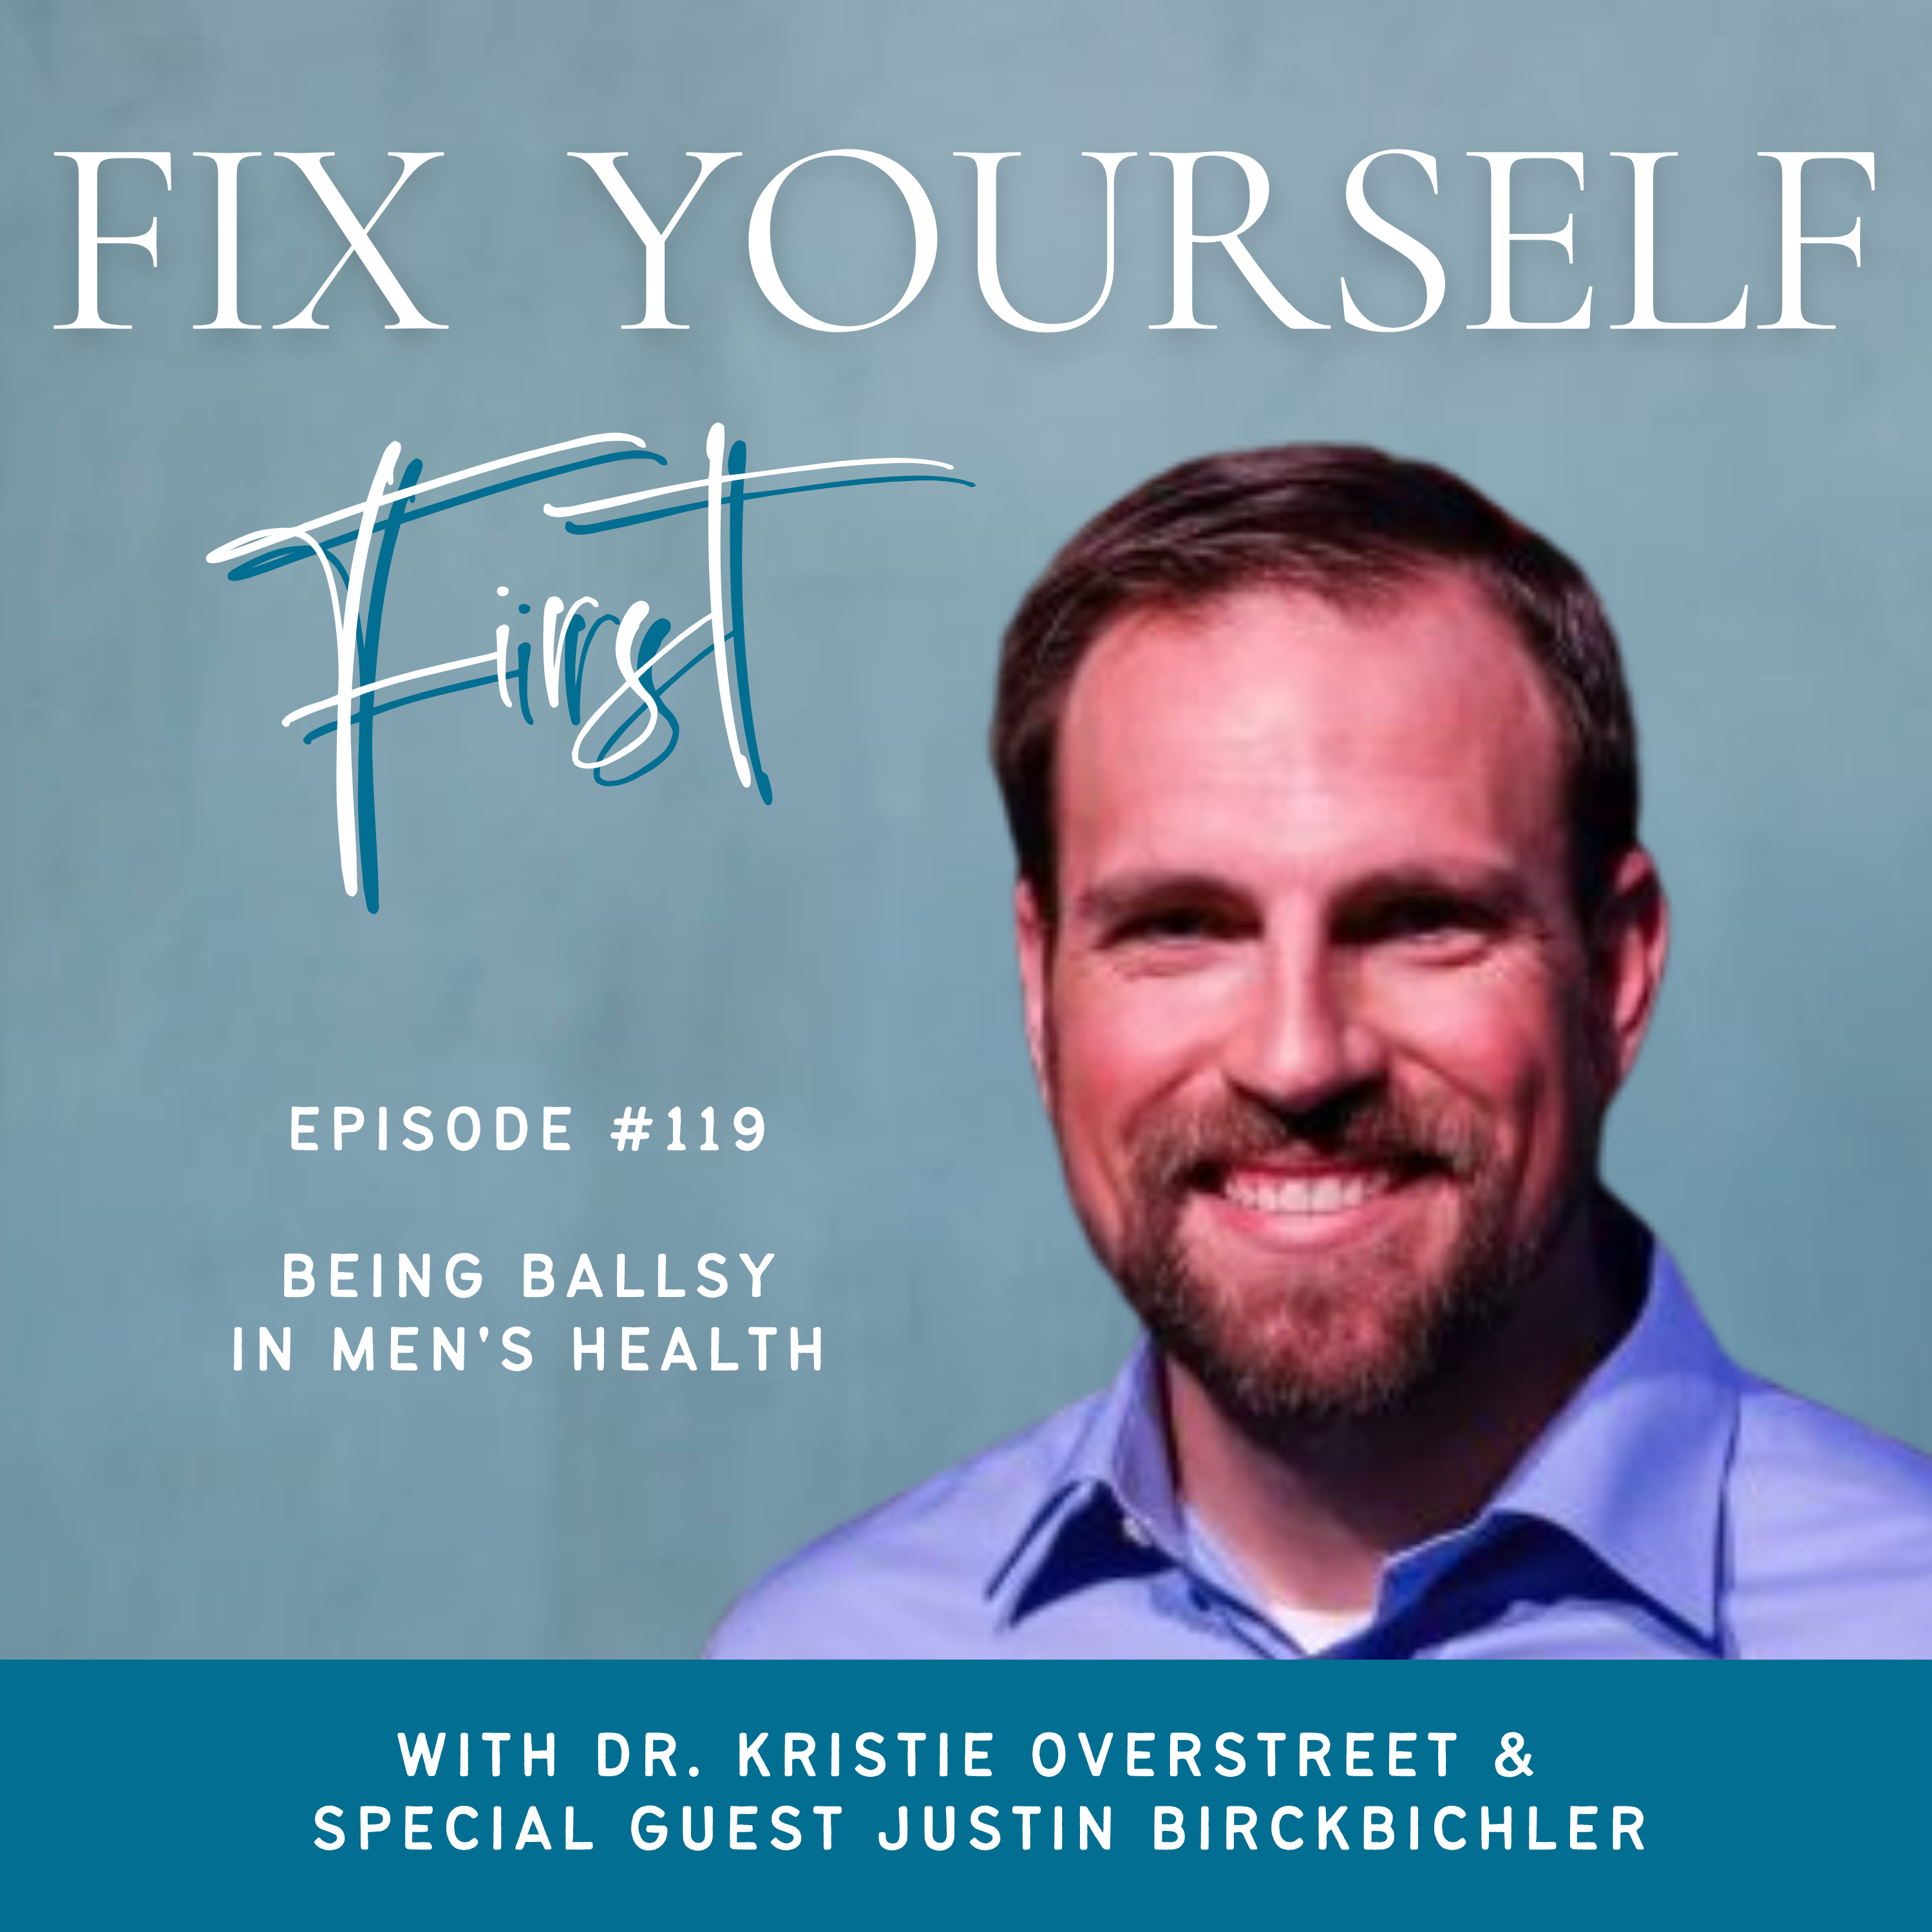 Fix Yourself First Episode 119 Being Ballsy in Men's Health with Justin Birckbichler